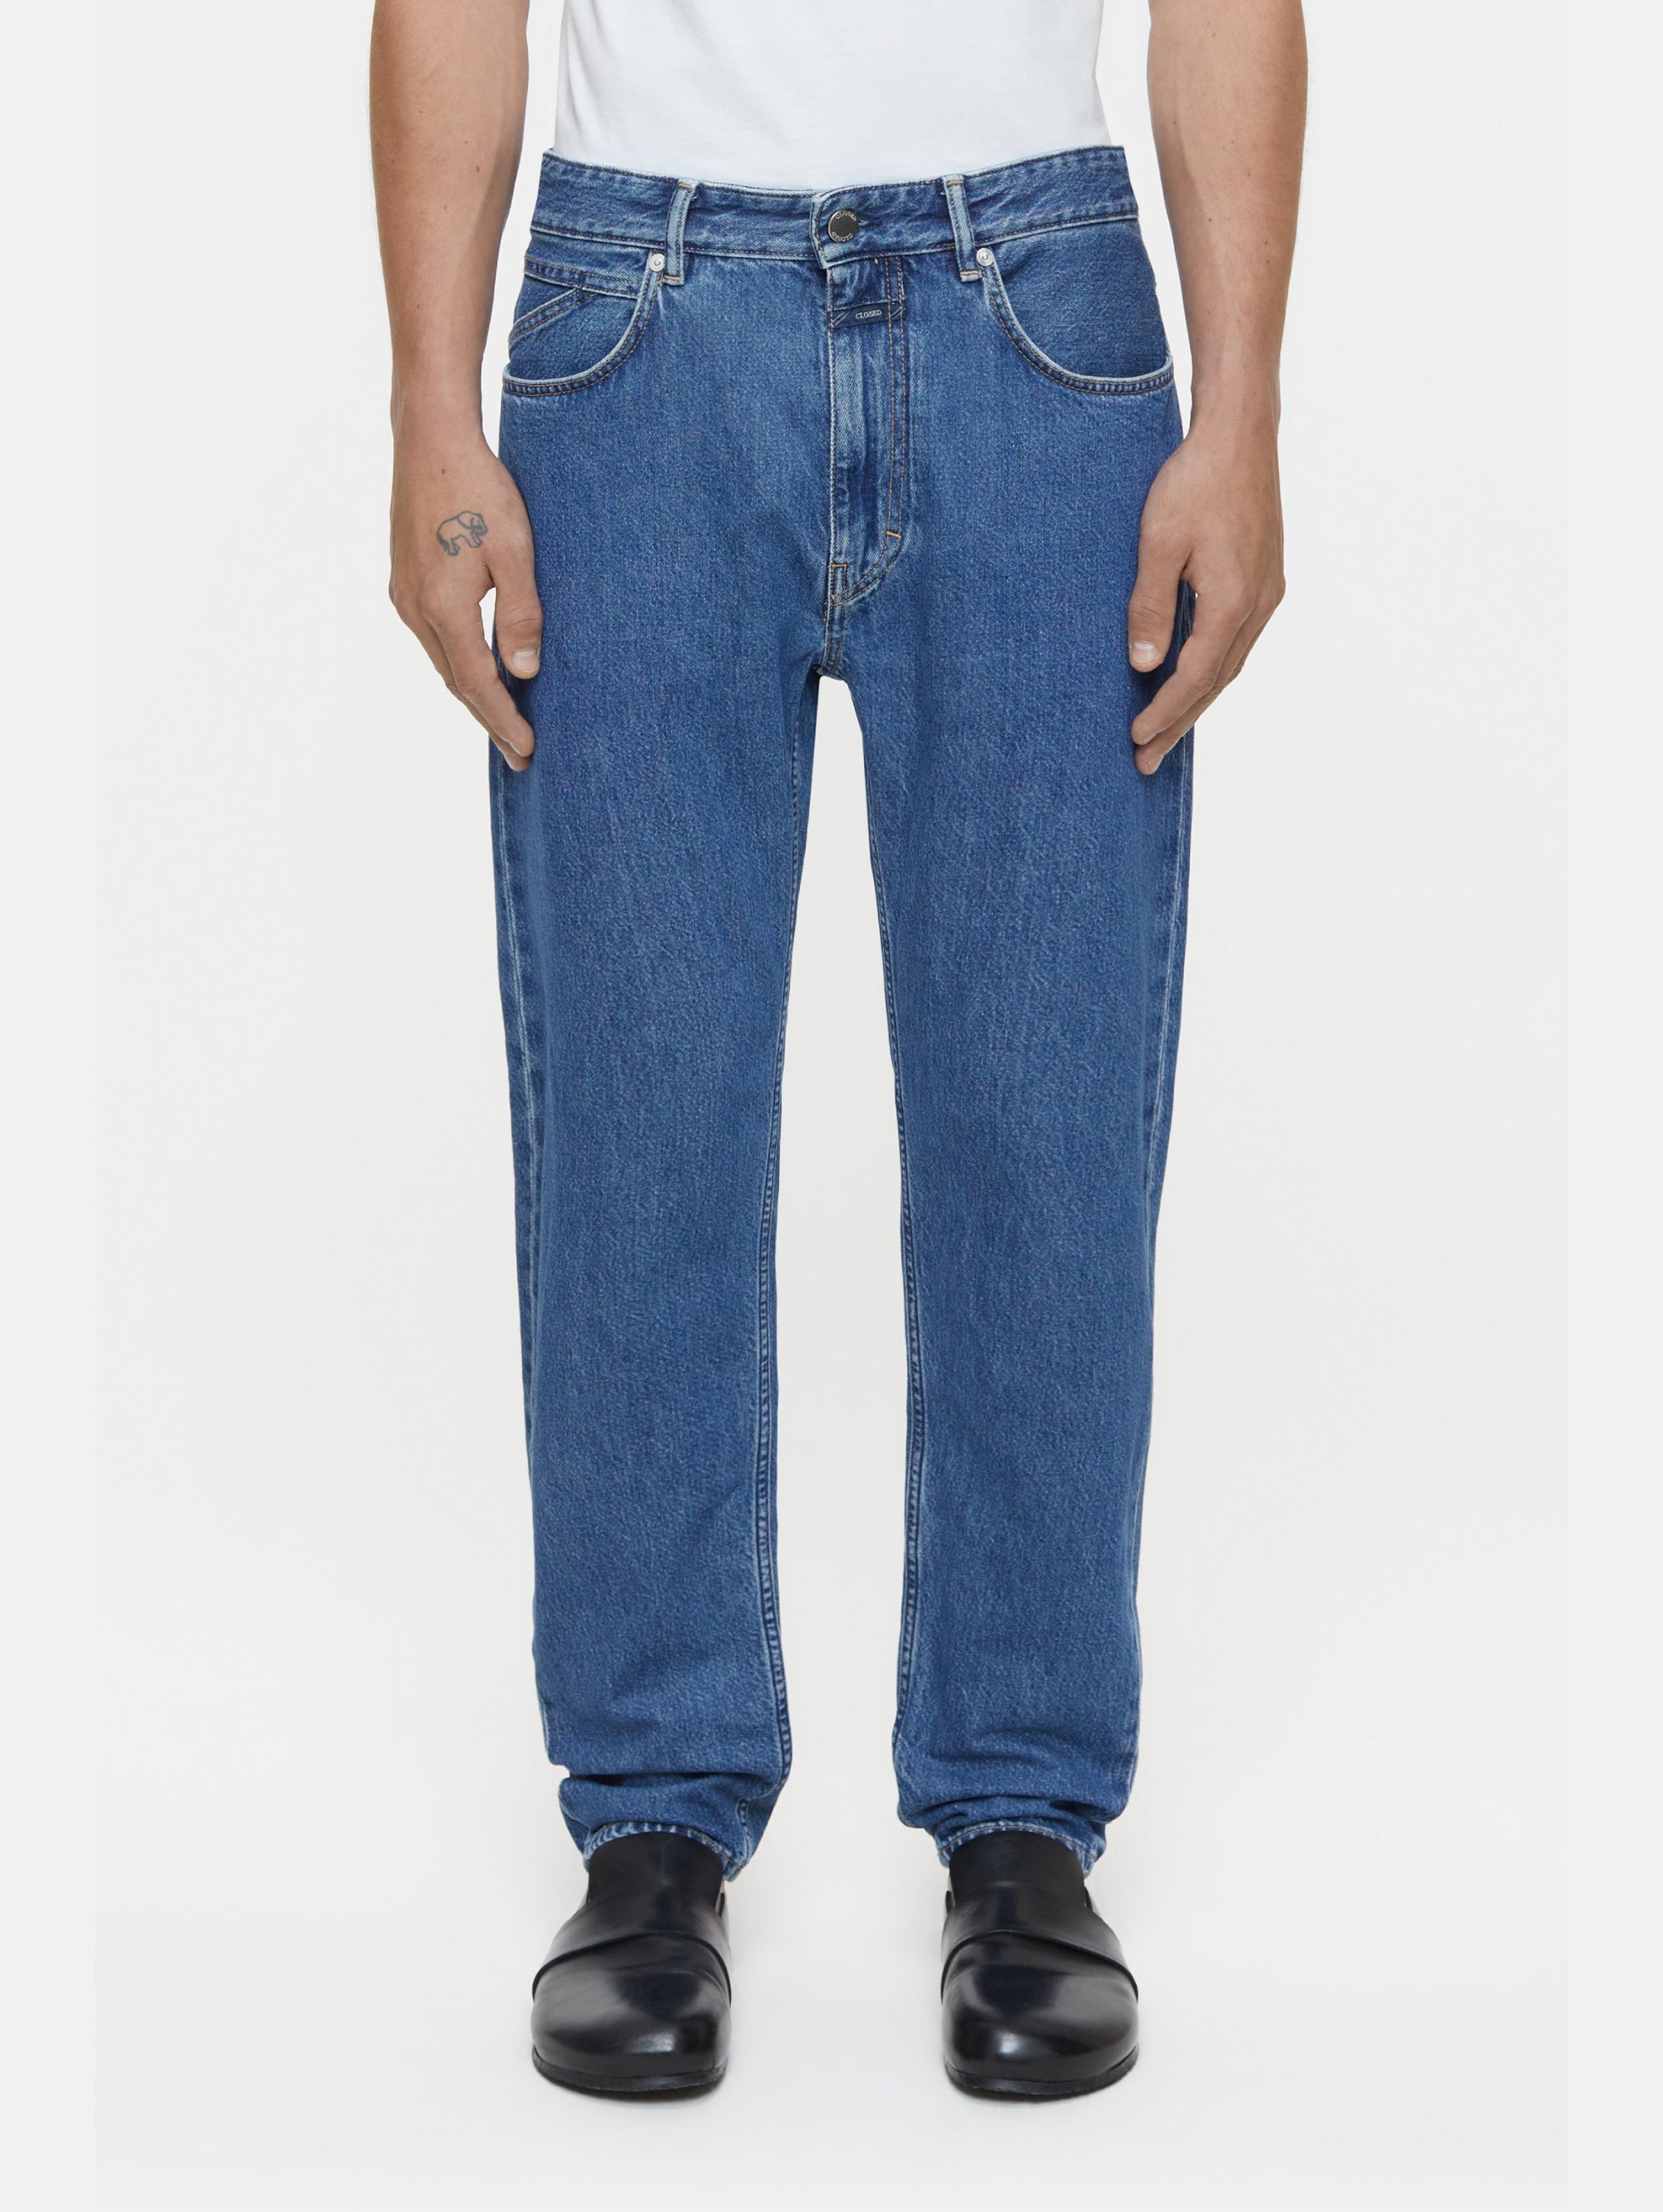 CLOSED-Jeans Regular Gamba Dritta Cooper True Blu Medio-TRYME Shop